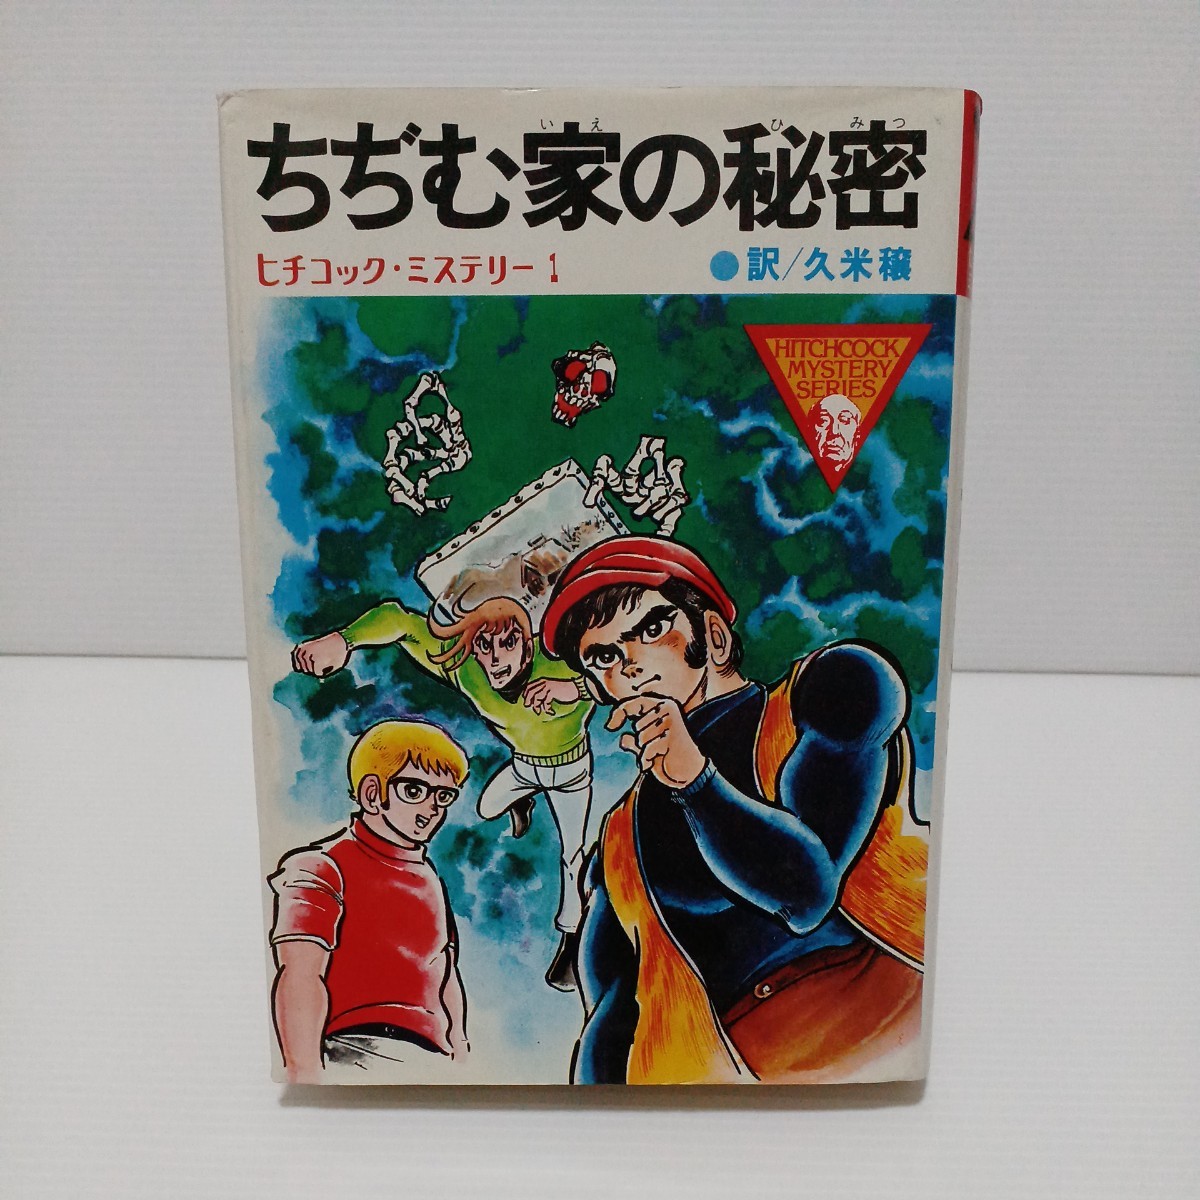 ちぢむ家の秘密　ヒチコック・ミステリー　訳／久米穣　1976年第1刷